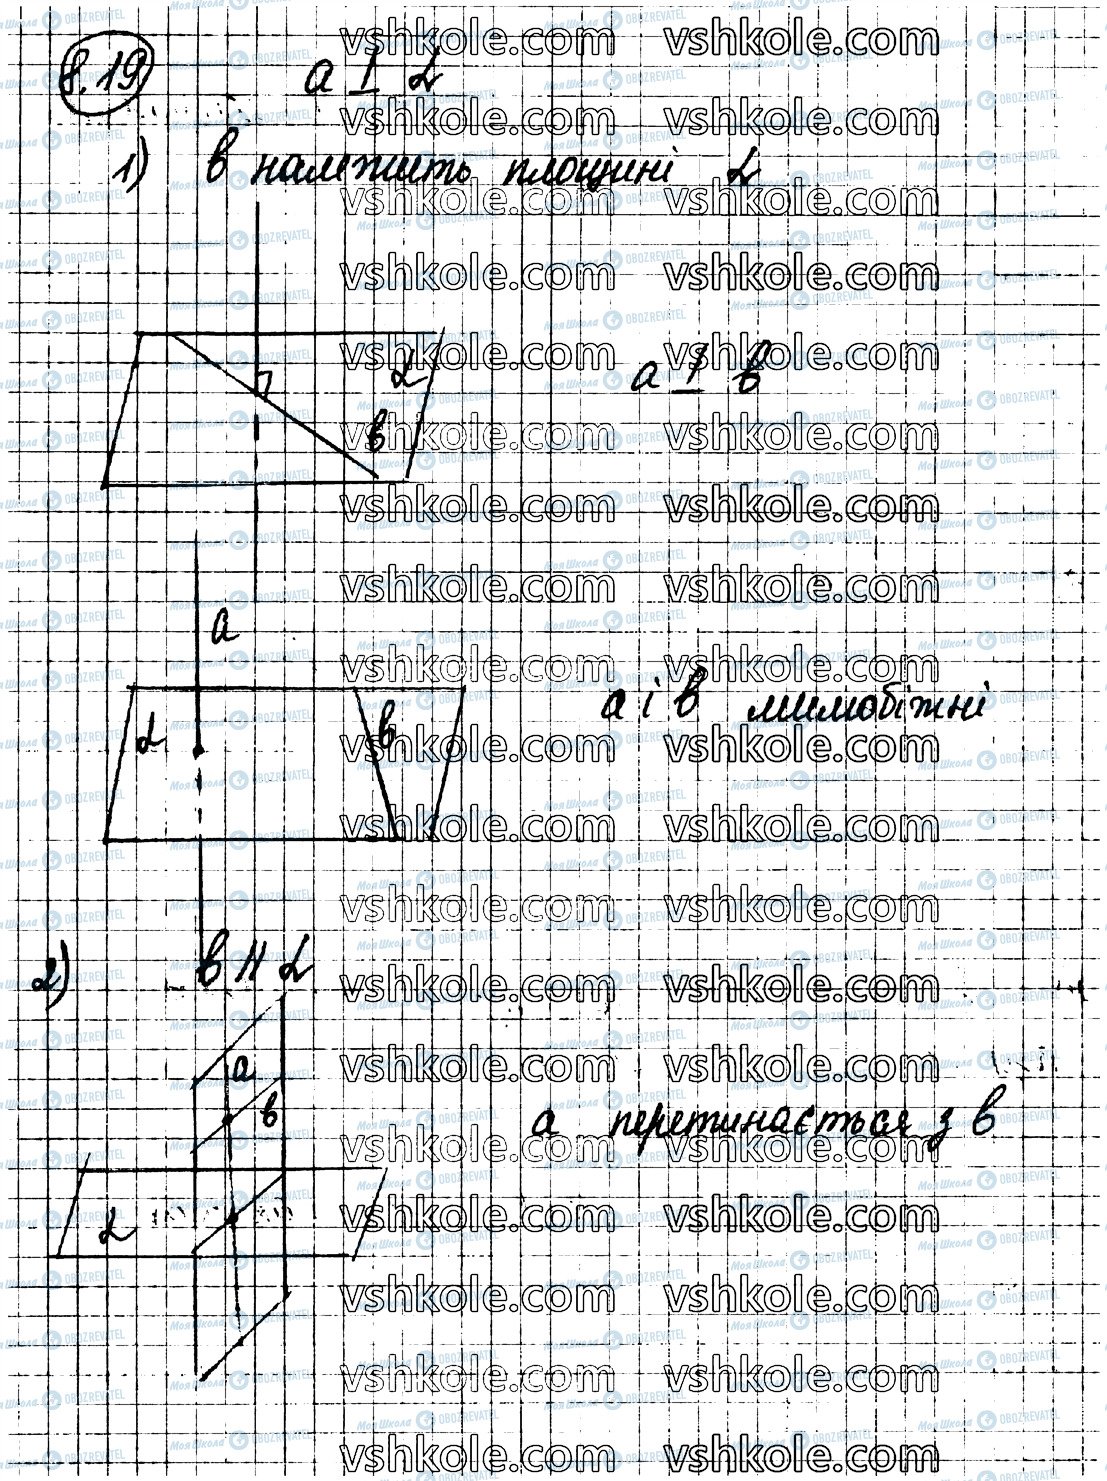 ГДЗ Геометрія 10 клас сторінка 19